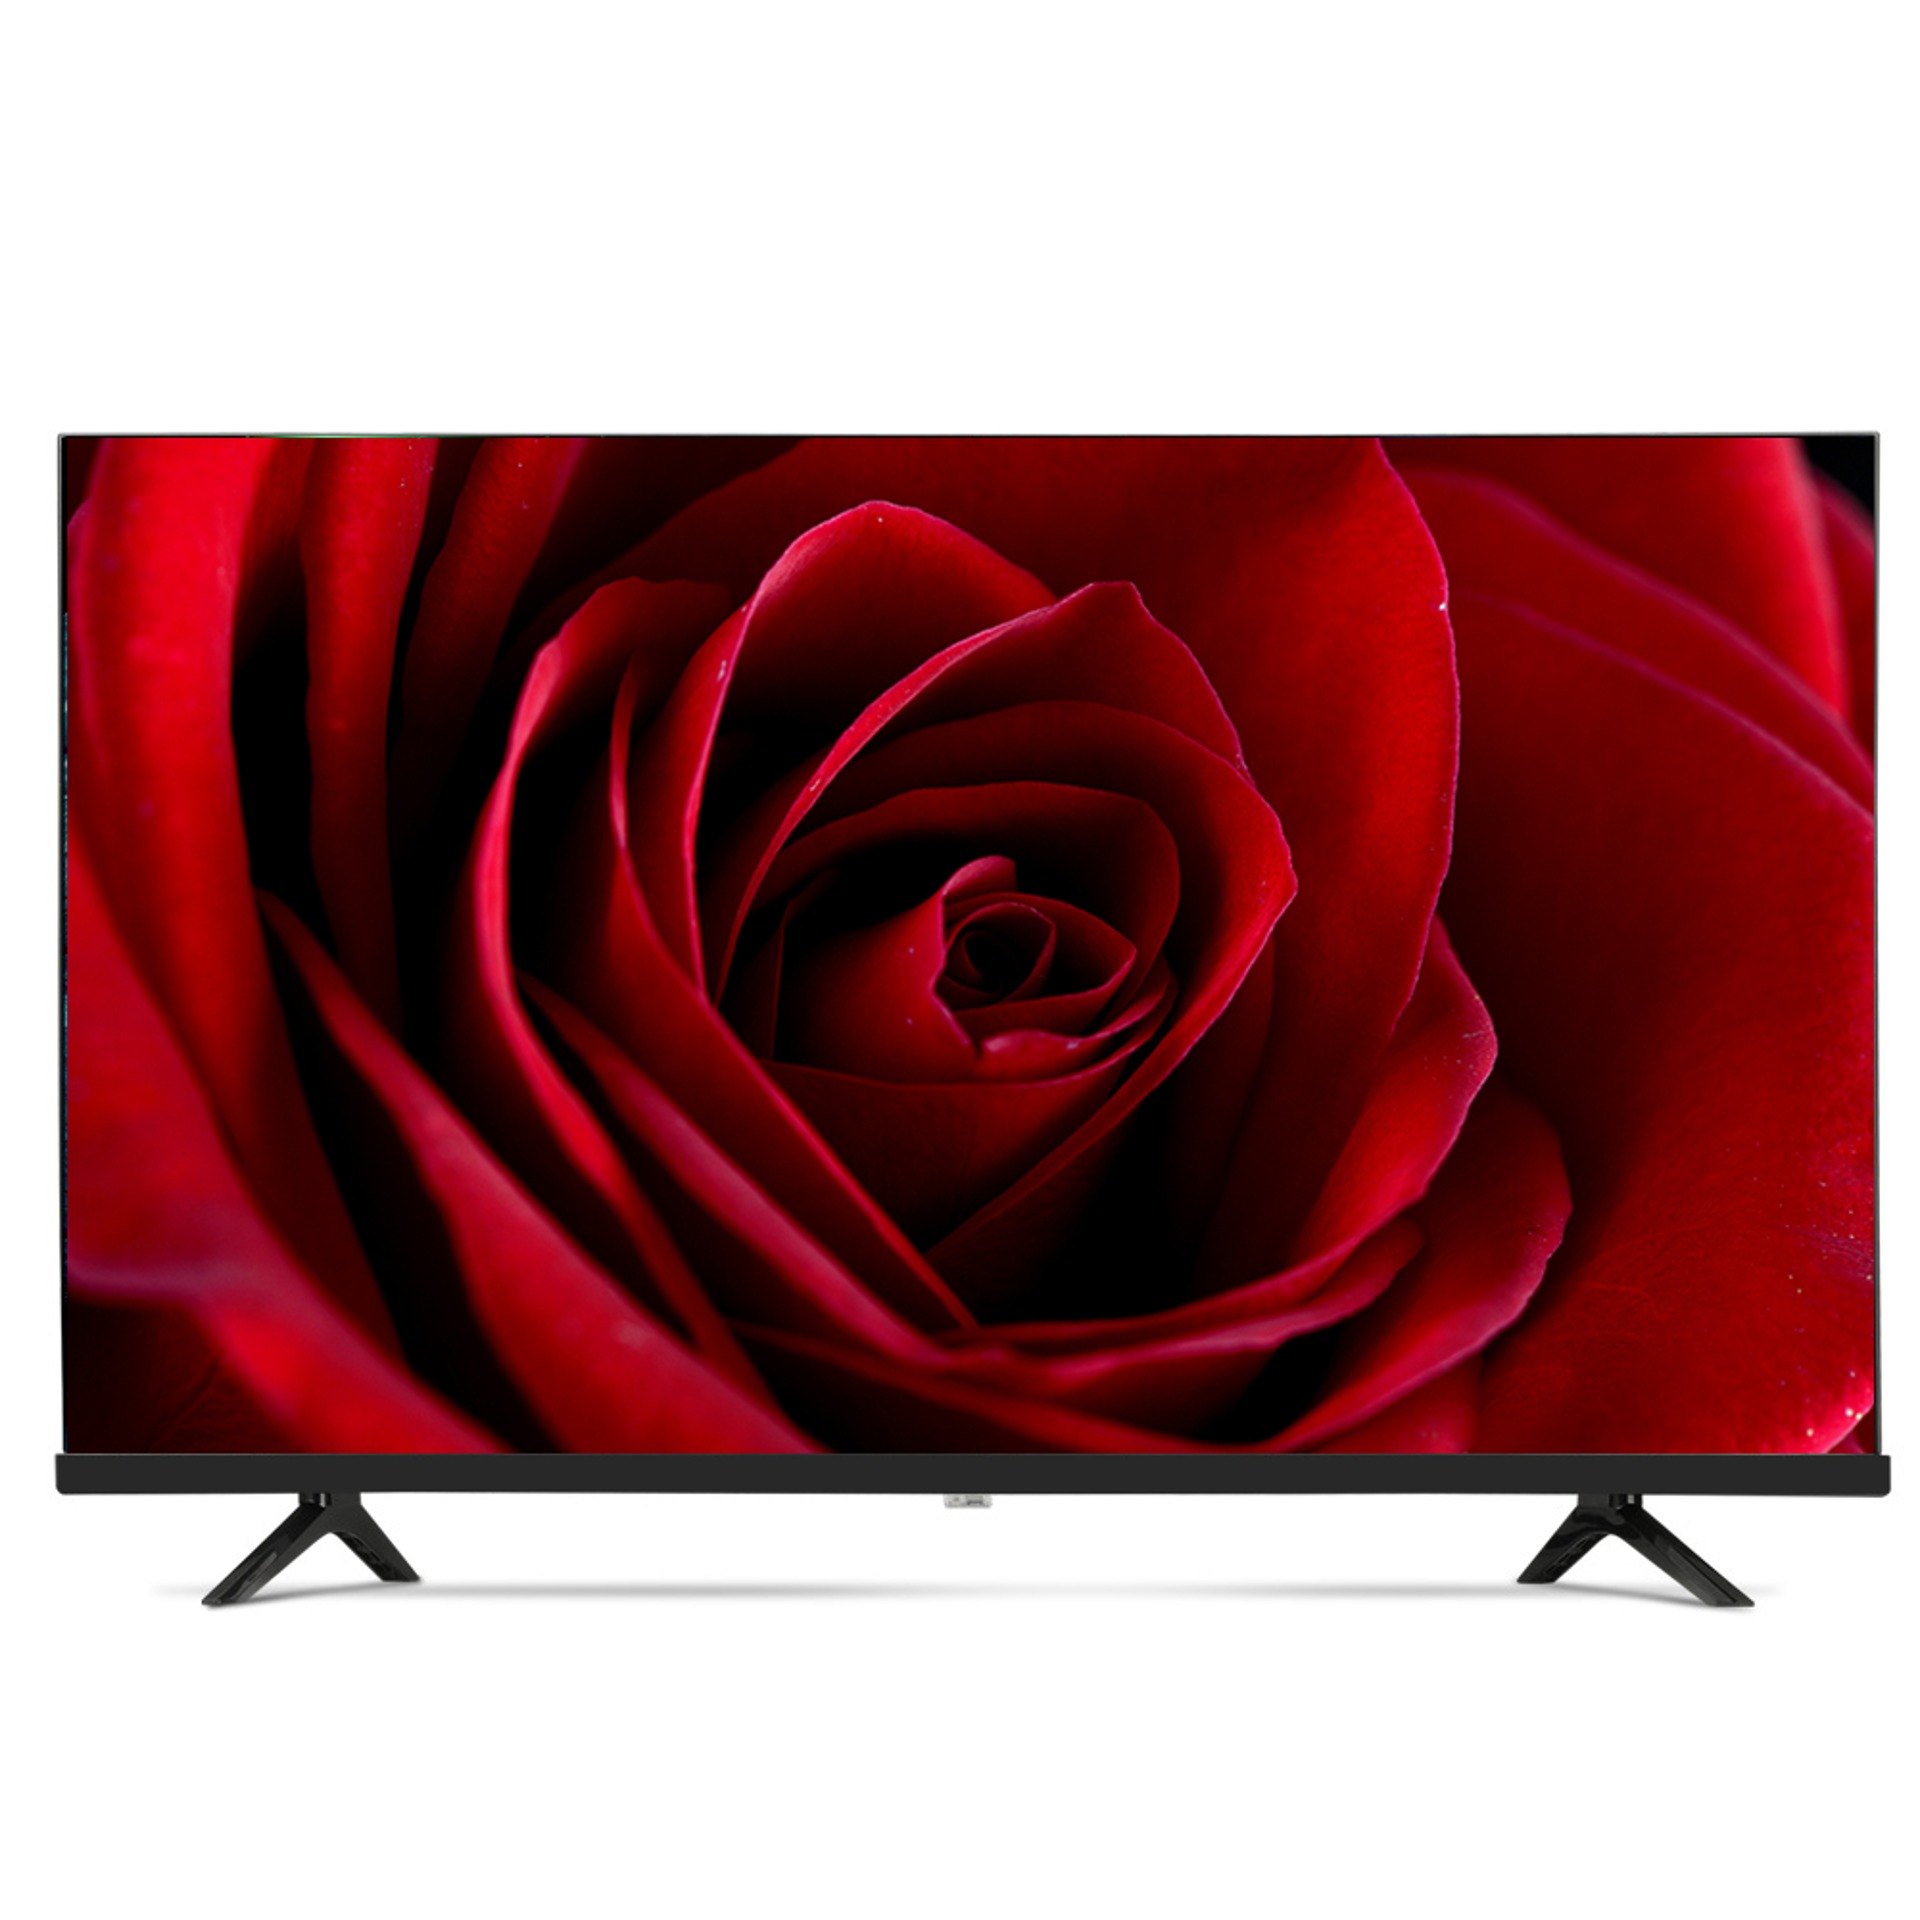 농협 하나로마트 판매모델 NH320HD 32인치 HDTV